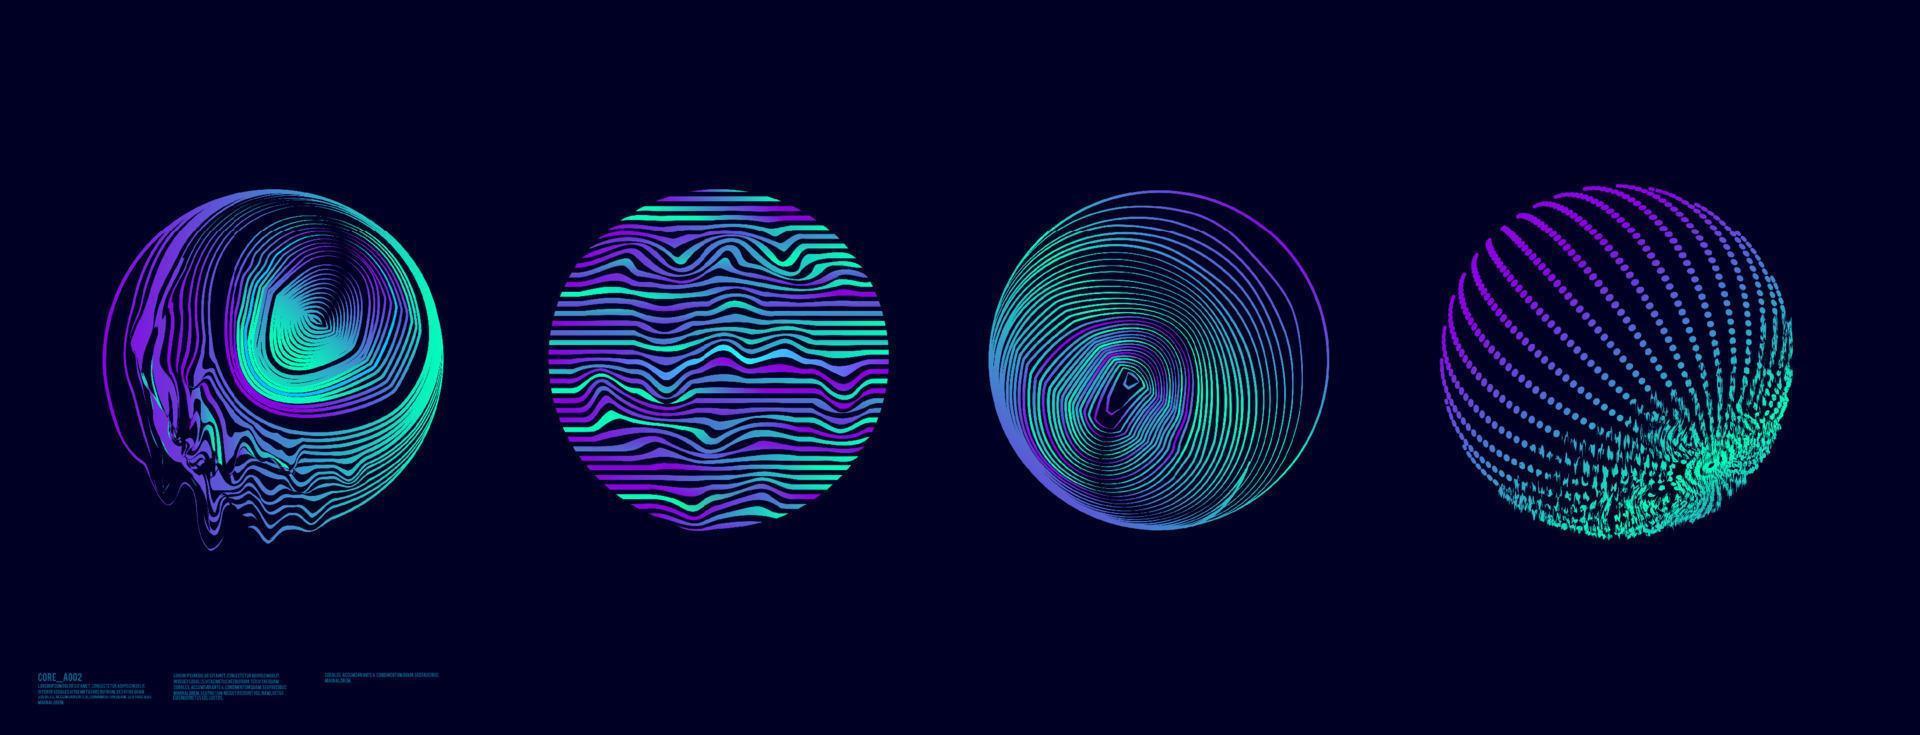 abstract cirkel glitch met vloeistof en punt vormen, retro futurisme synthwave, dampgolf, holografische verlichte in jaren 80-90 vector